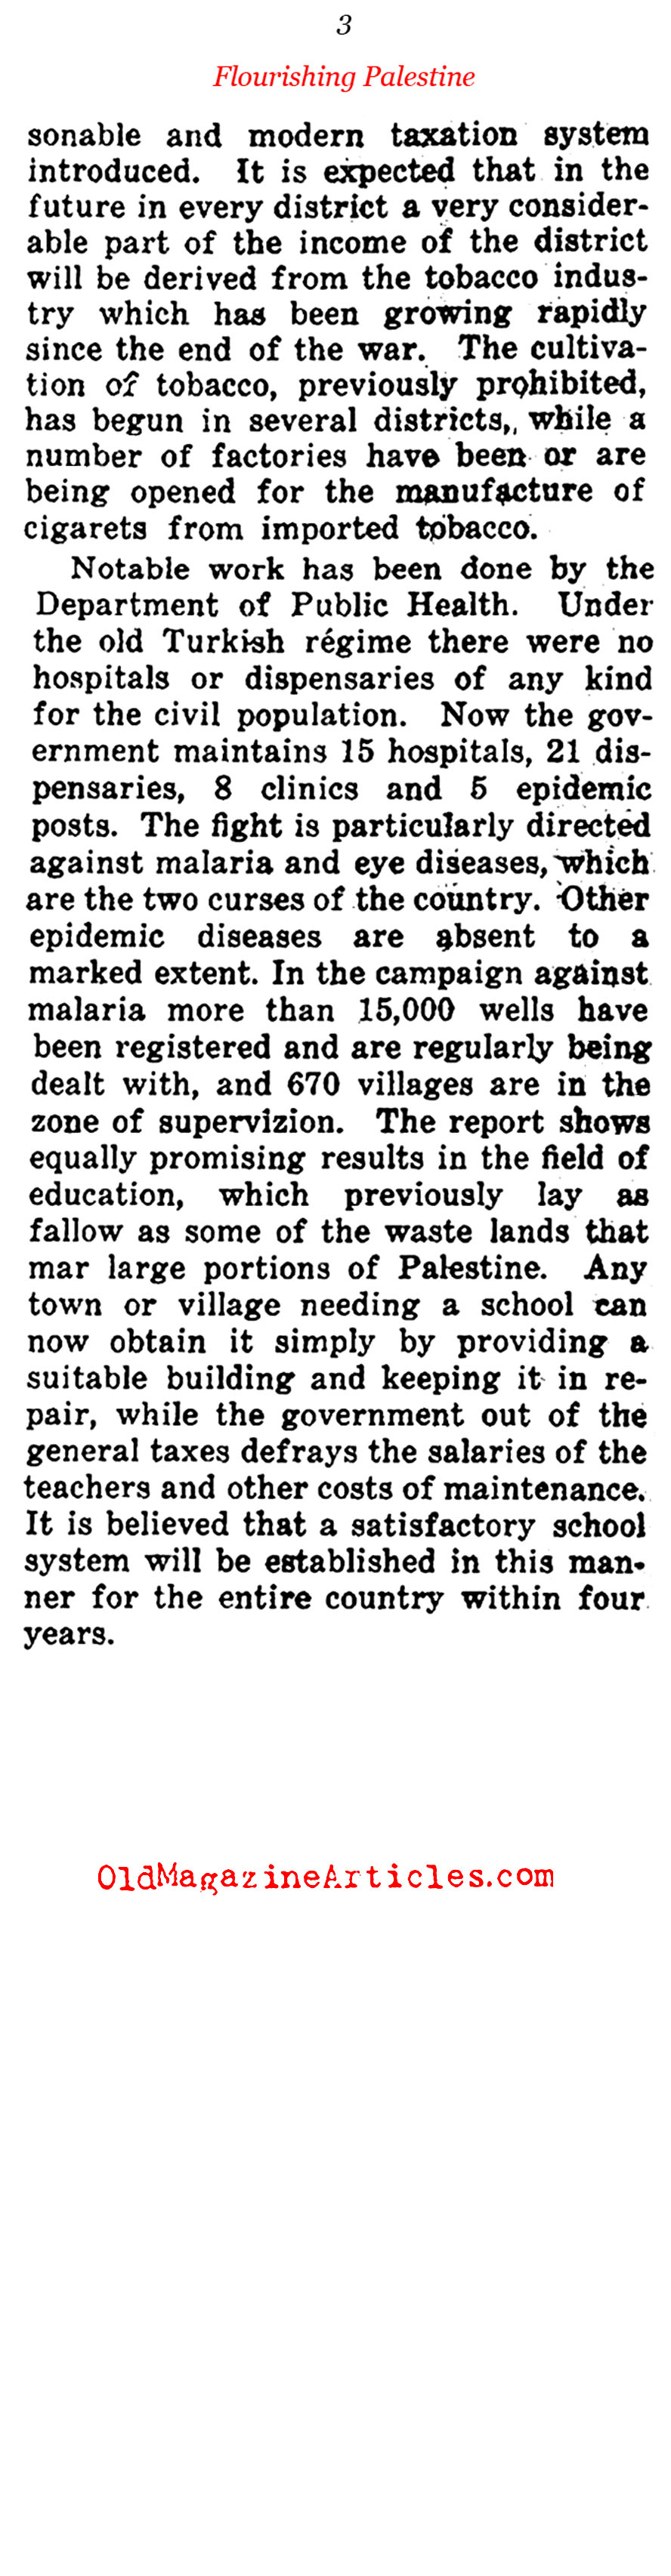 British Palestine Thrives (Current Opinion, 1922)